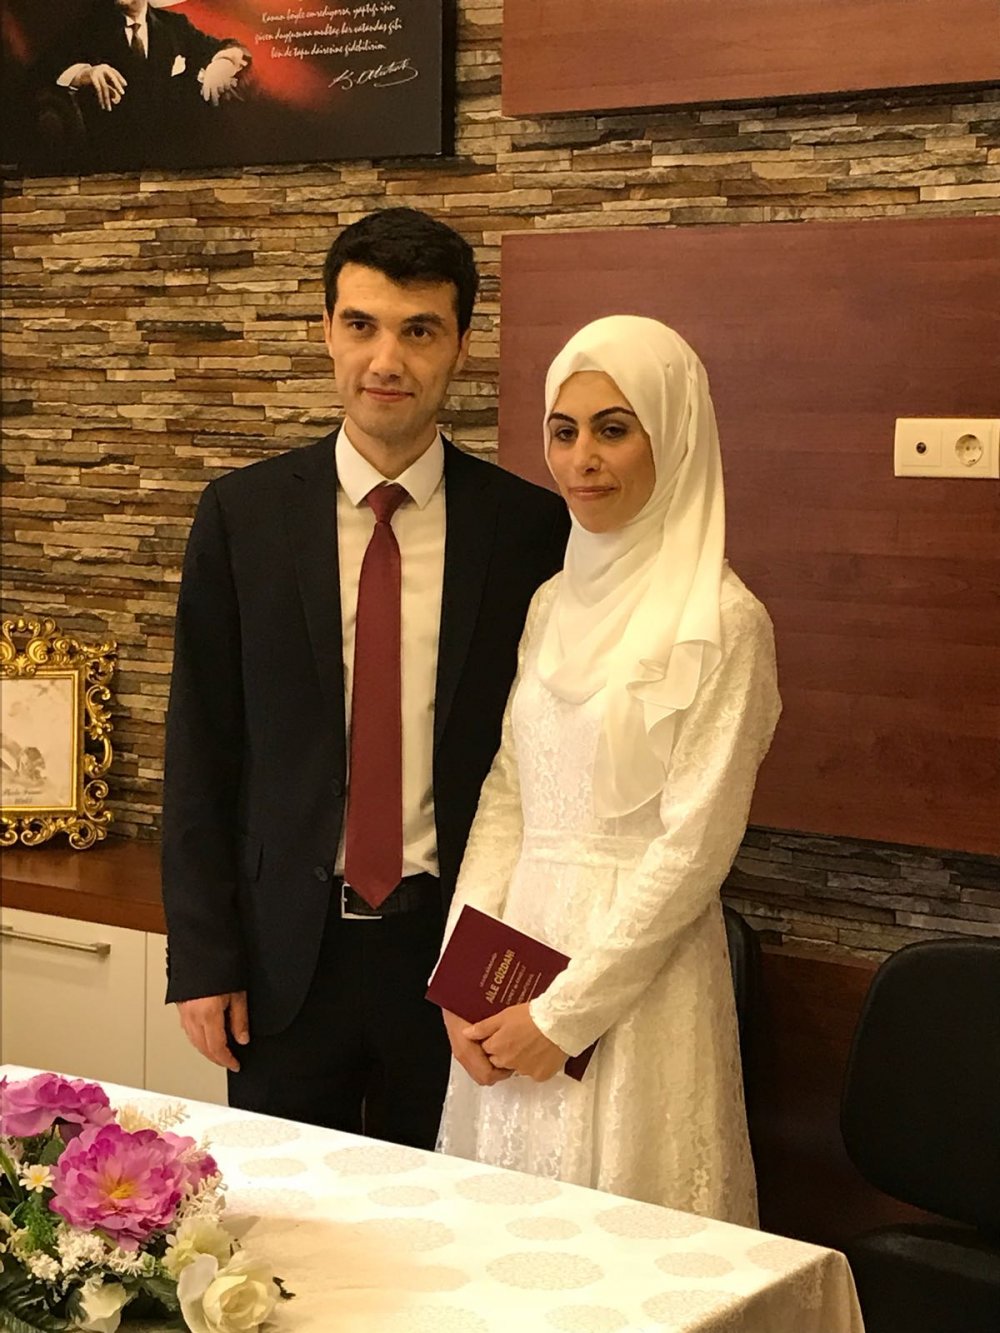 Trabzon'da düğün yapan savcı Karabük'e düğün yapmaya gitmiş ve yıldırım çarpması sonucu hayatını kaybetmişti.